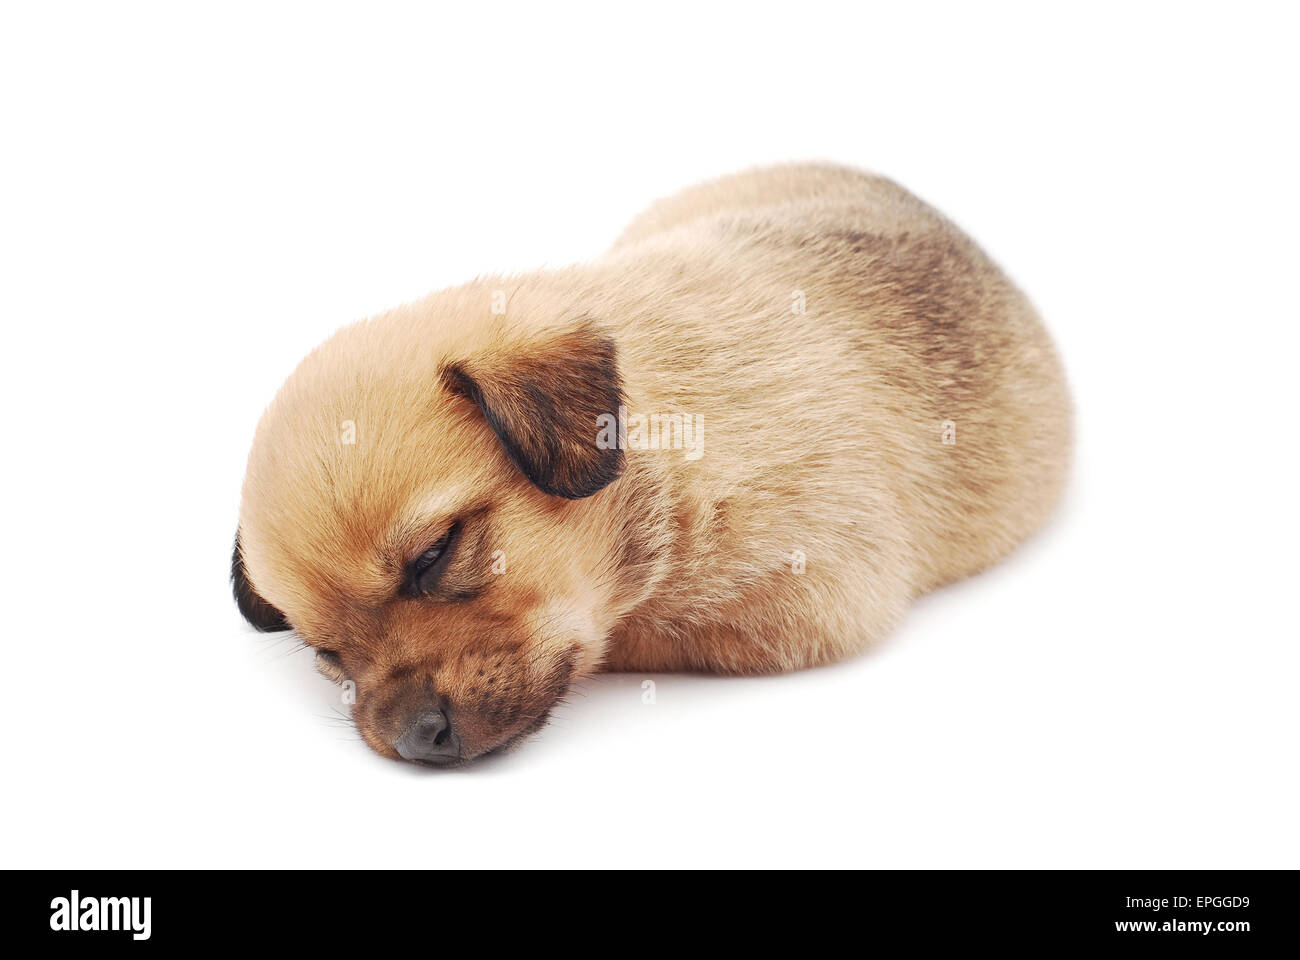 Sleeping cucciolo su sfondo bianco Foto Stock